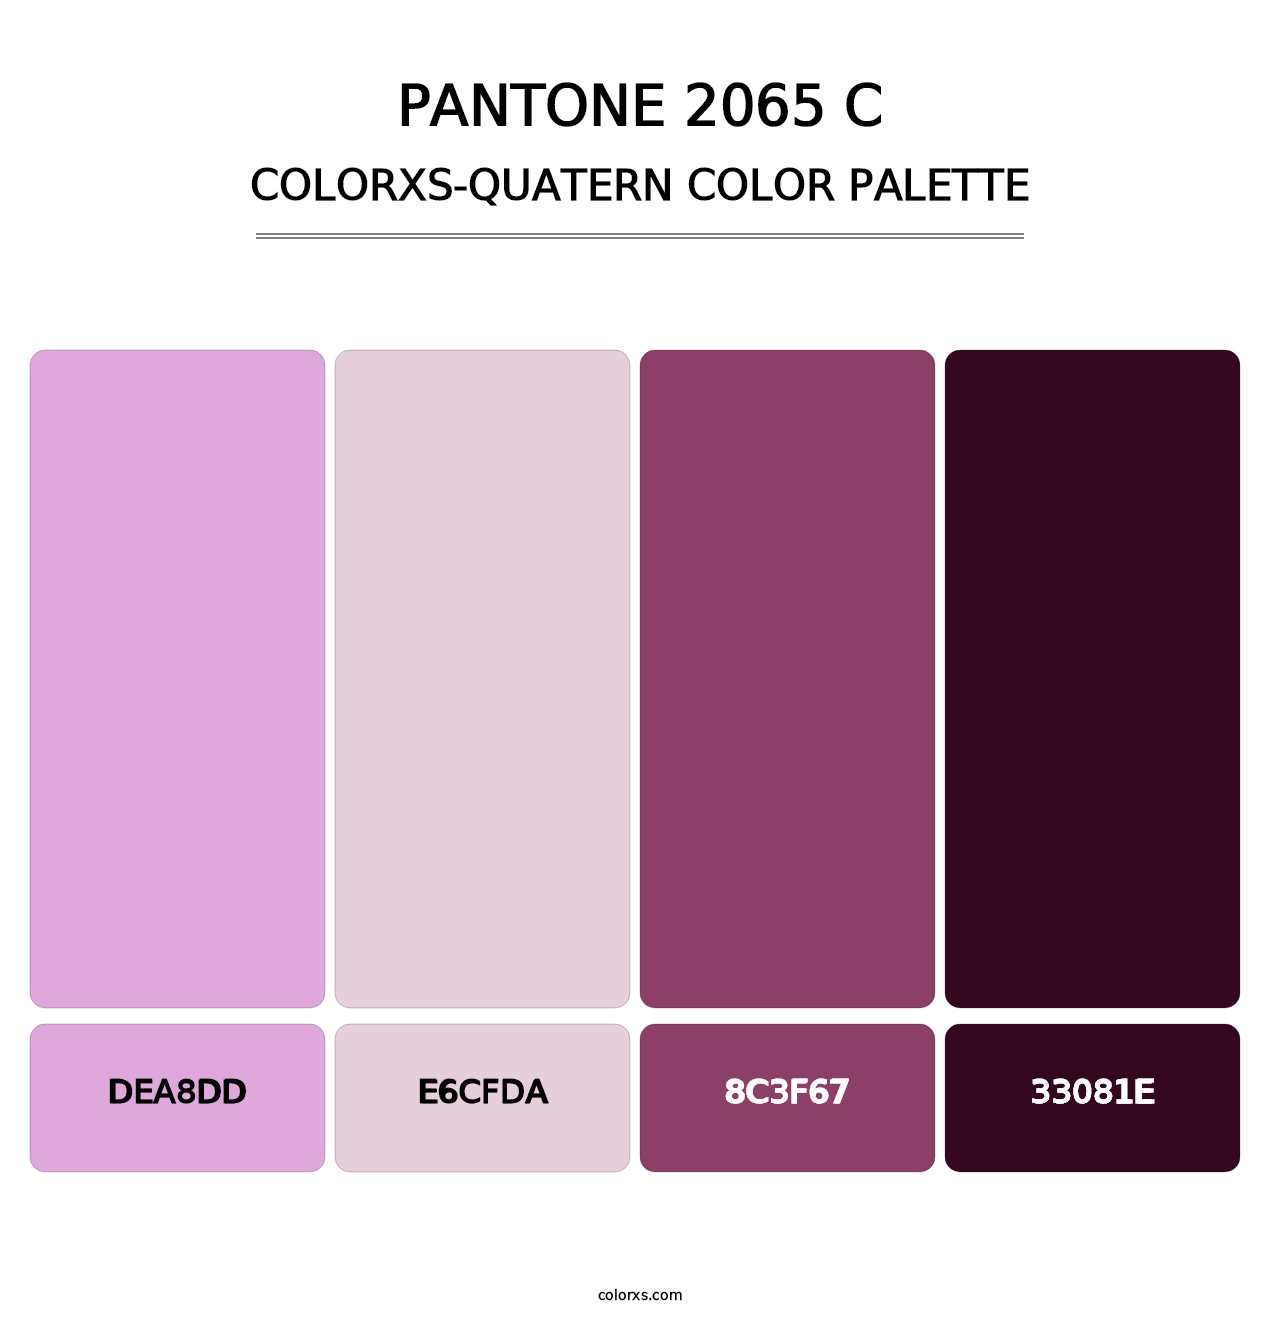 PANTONE 2065 C - Colorxs Quatern Palette